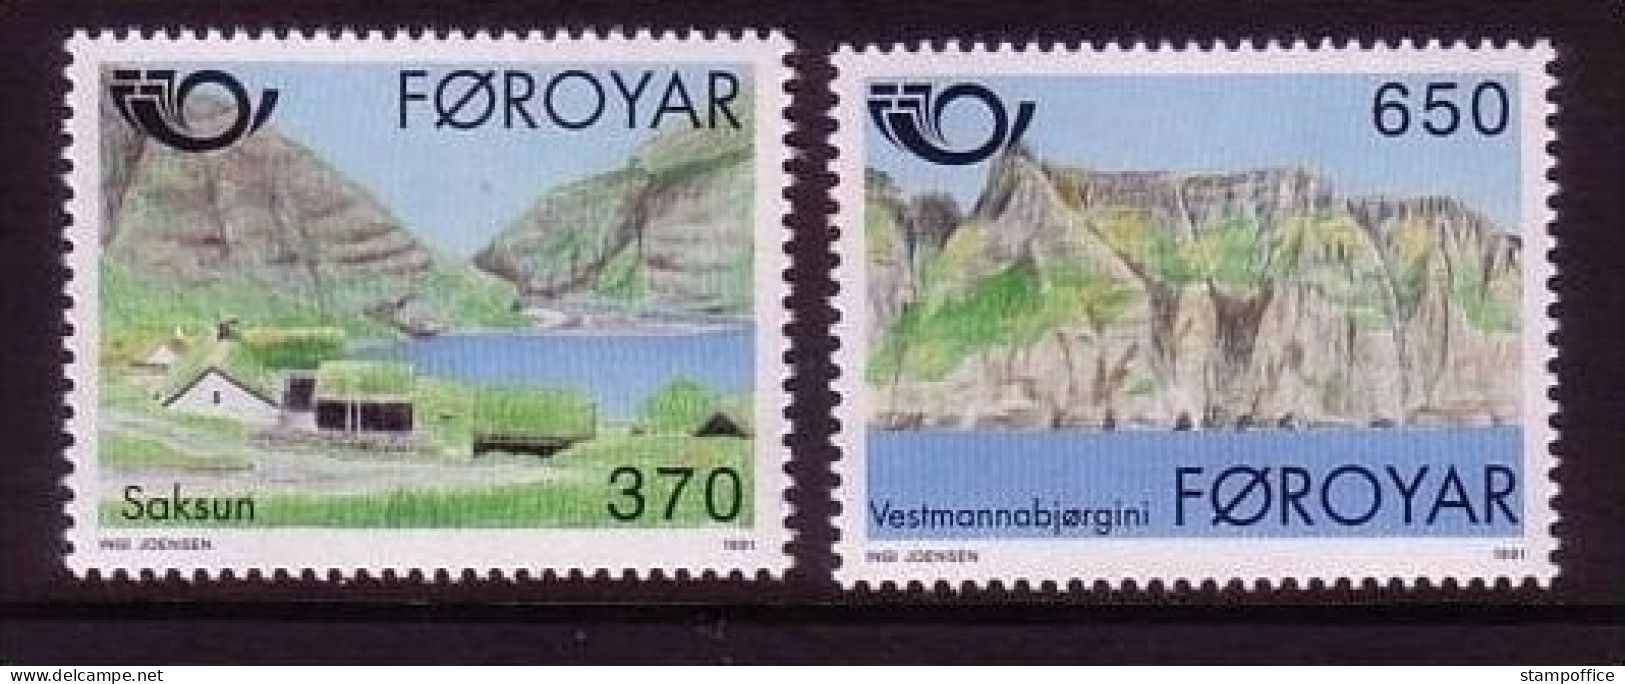 FÄRÖER MI-NR. 219-220 POSTFRISCH(MINT) NORDEN 1991 - TOURISMUS - Faroe Islands